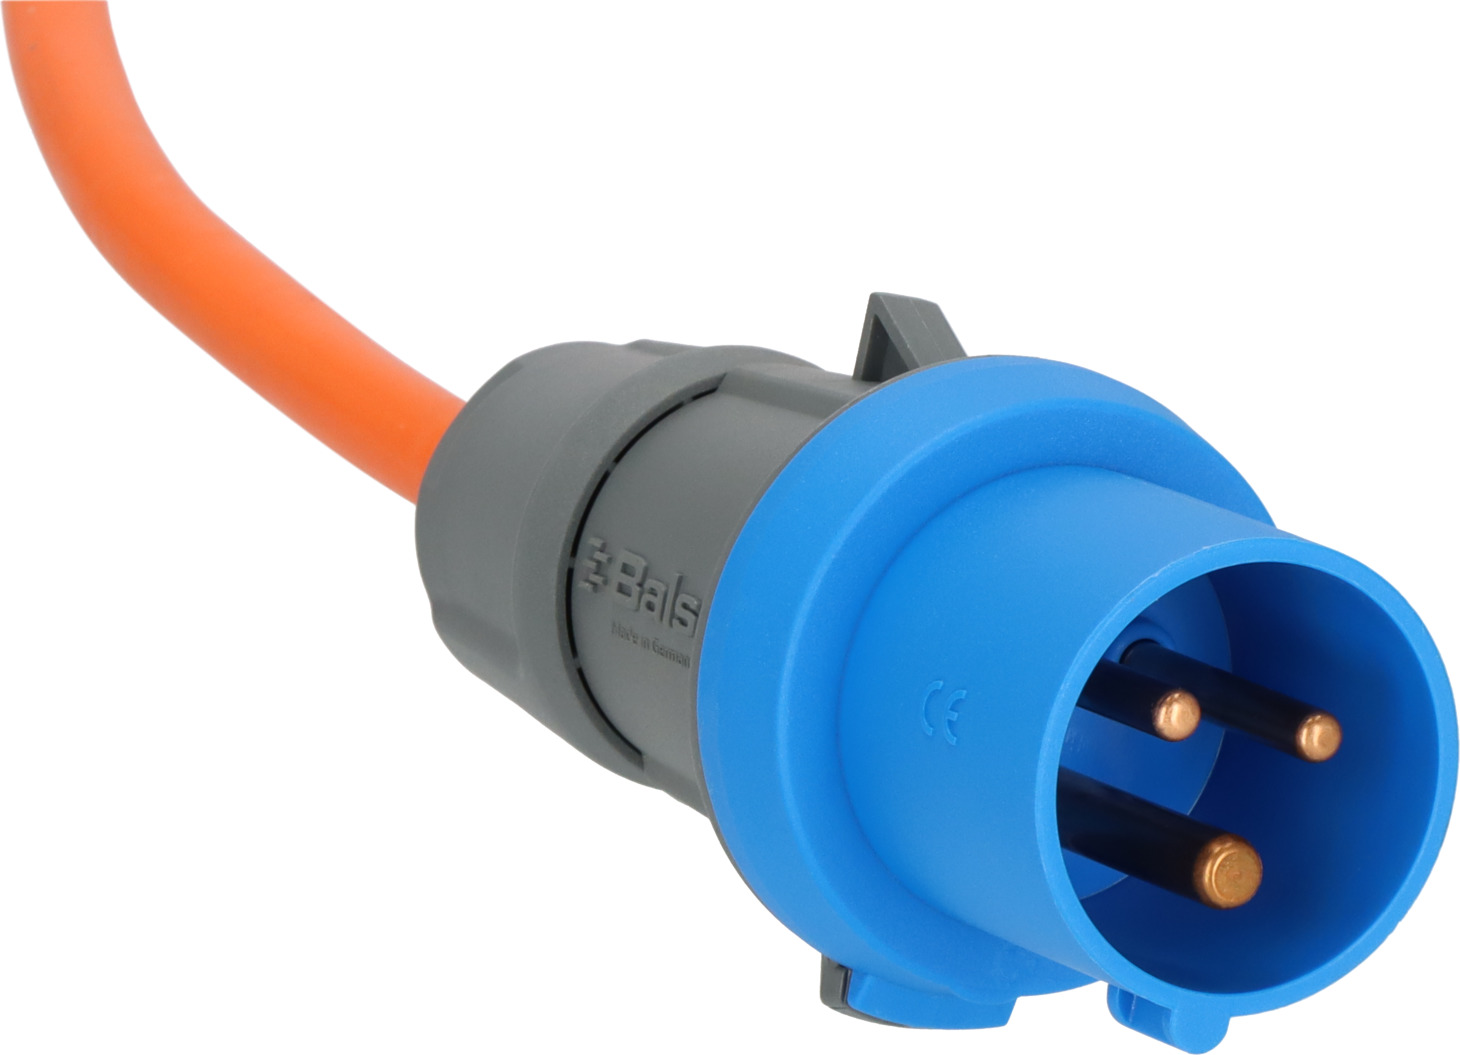 FORMAT Kabel - 2 polig 25000 mm bei SEEFELDER kaufen